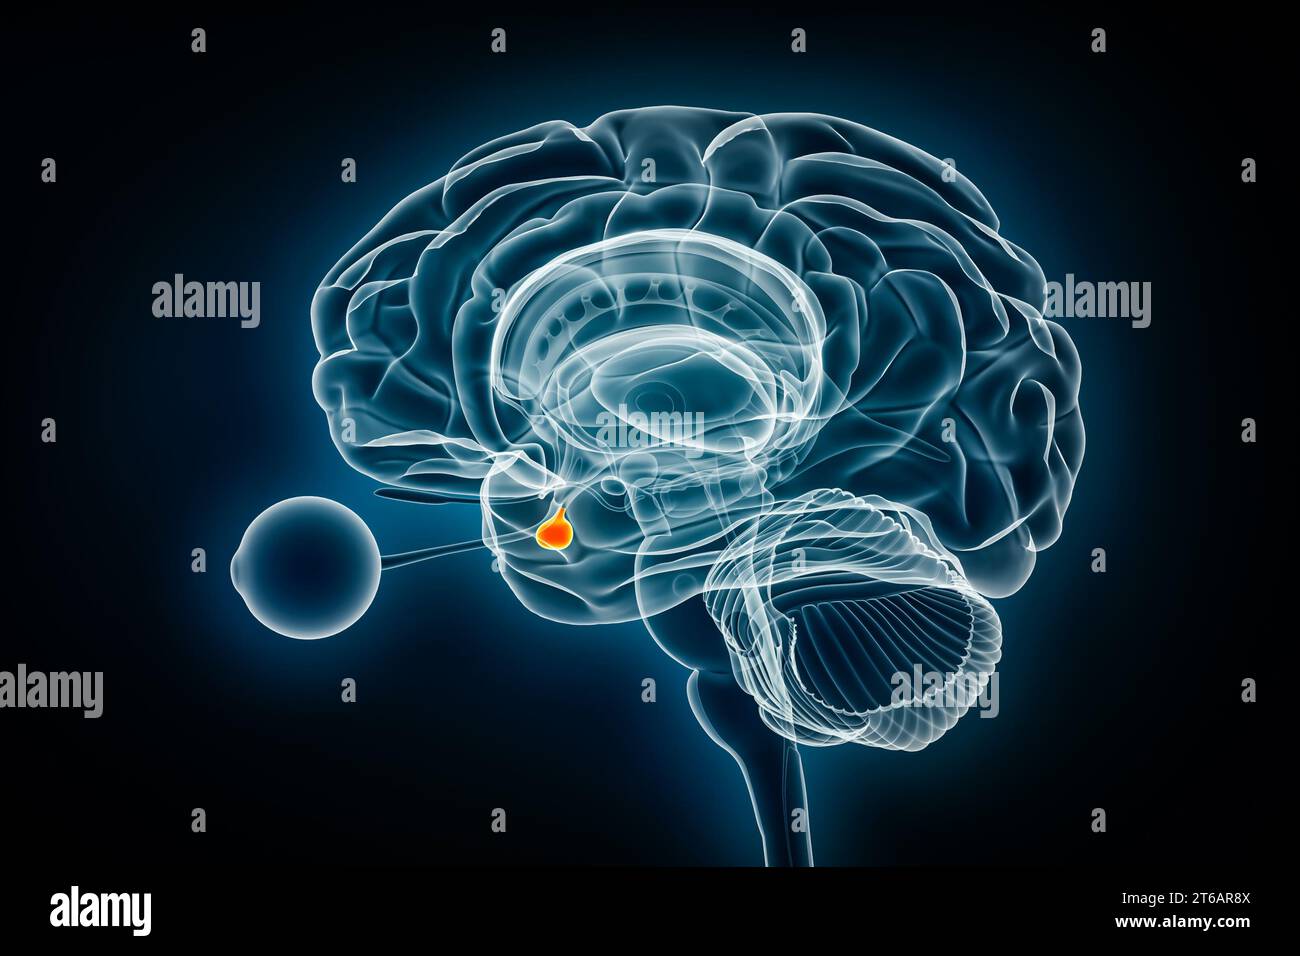 Illustrazione del rendering 3D della ghiandola ipofisaria o della neuroipofisi. Cervello umano, anatomia del sistema nervoso ed endocrino, medico, sanitario, scien Foto Stock